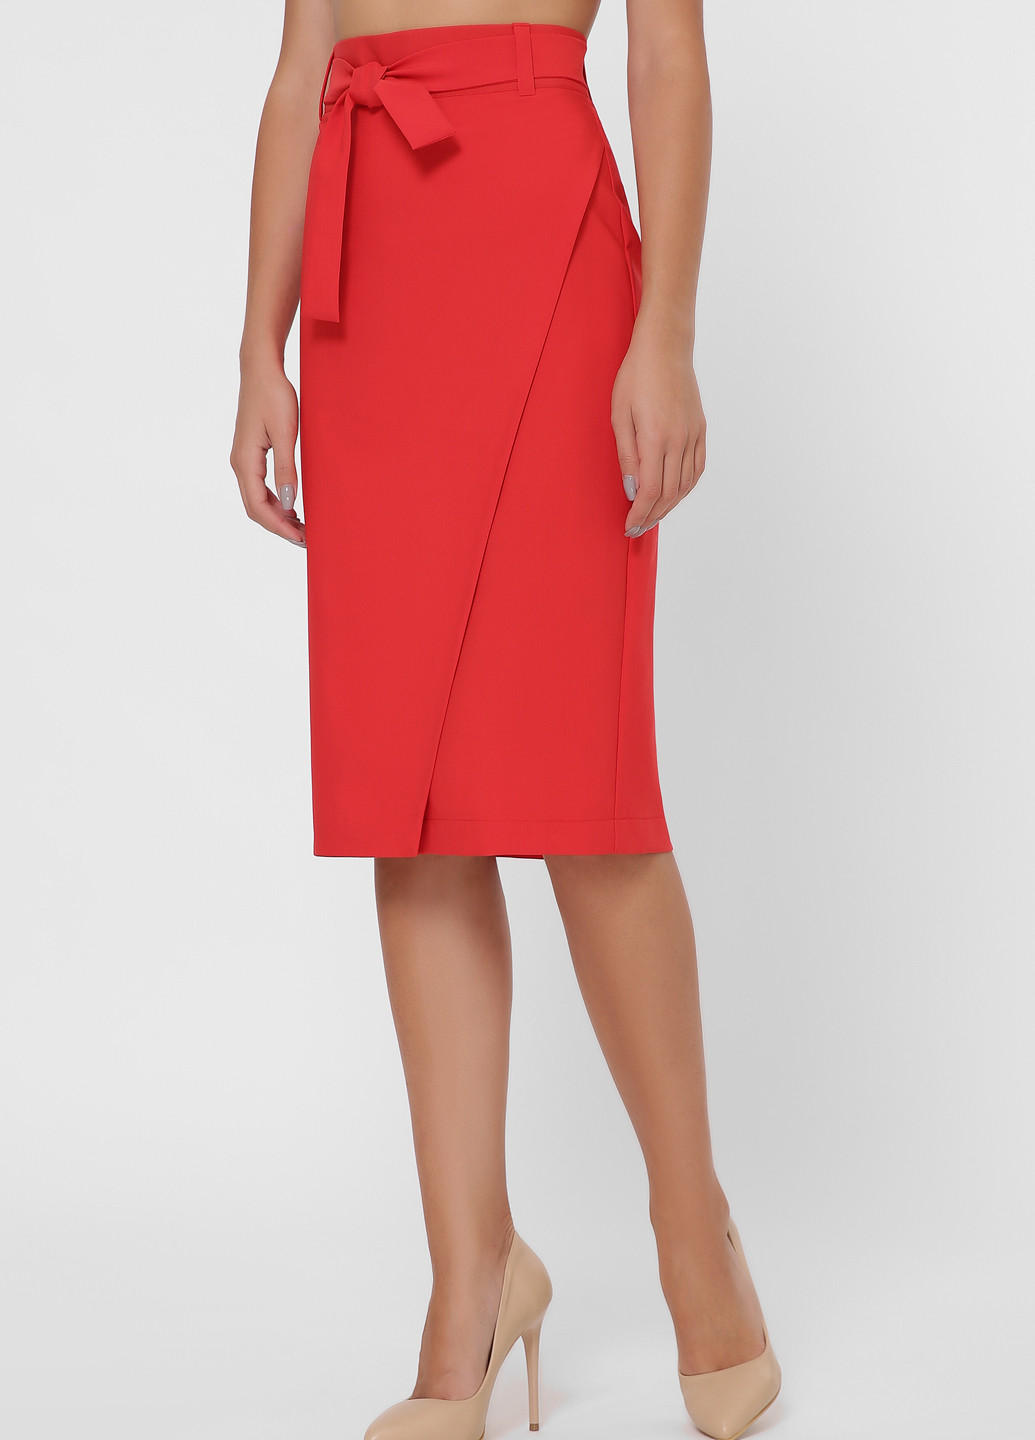 Красная офисная однотонная юбка Fashion Up карандаш